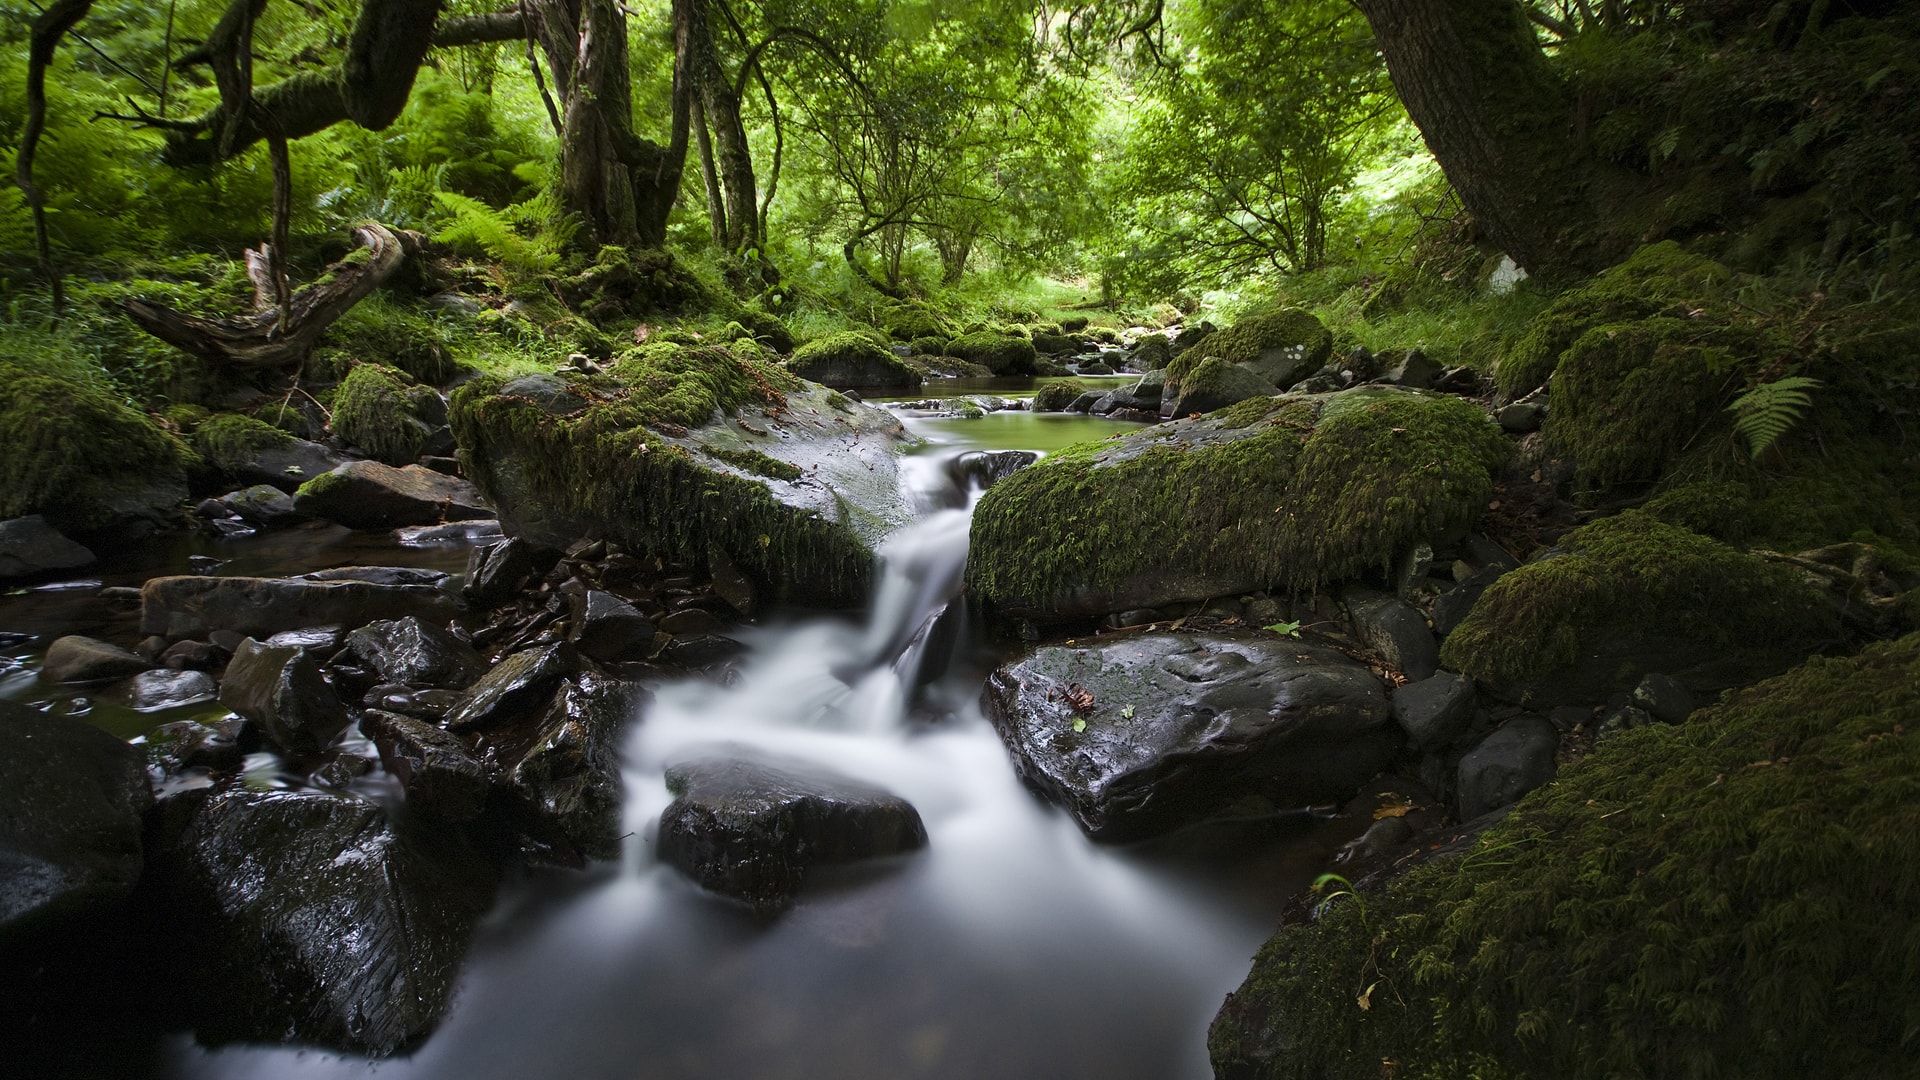 绿色森林一条小溪淙淙作响风景壁纸